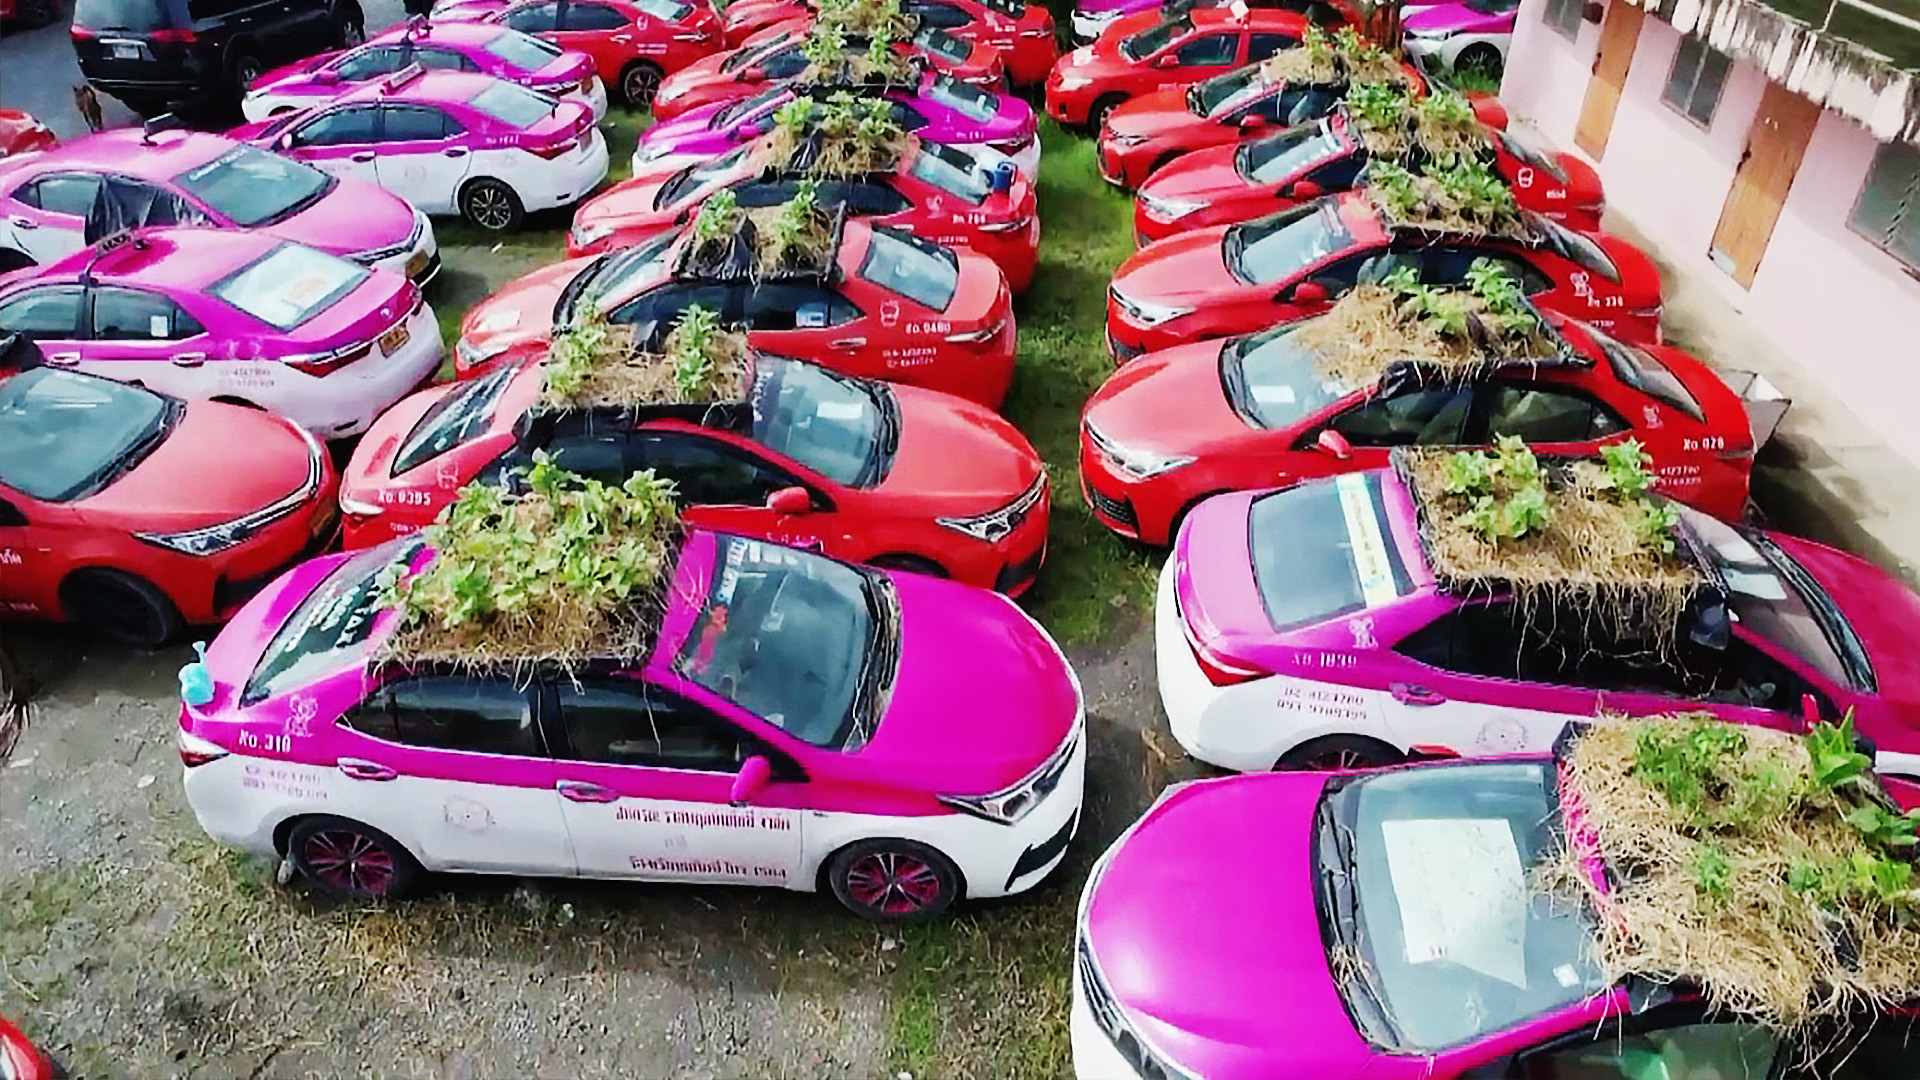 Огород на капоте: тайские таксисты сажают овощи прямо на машинах